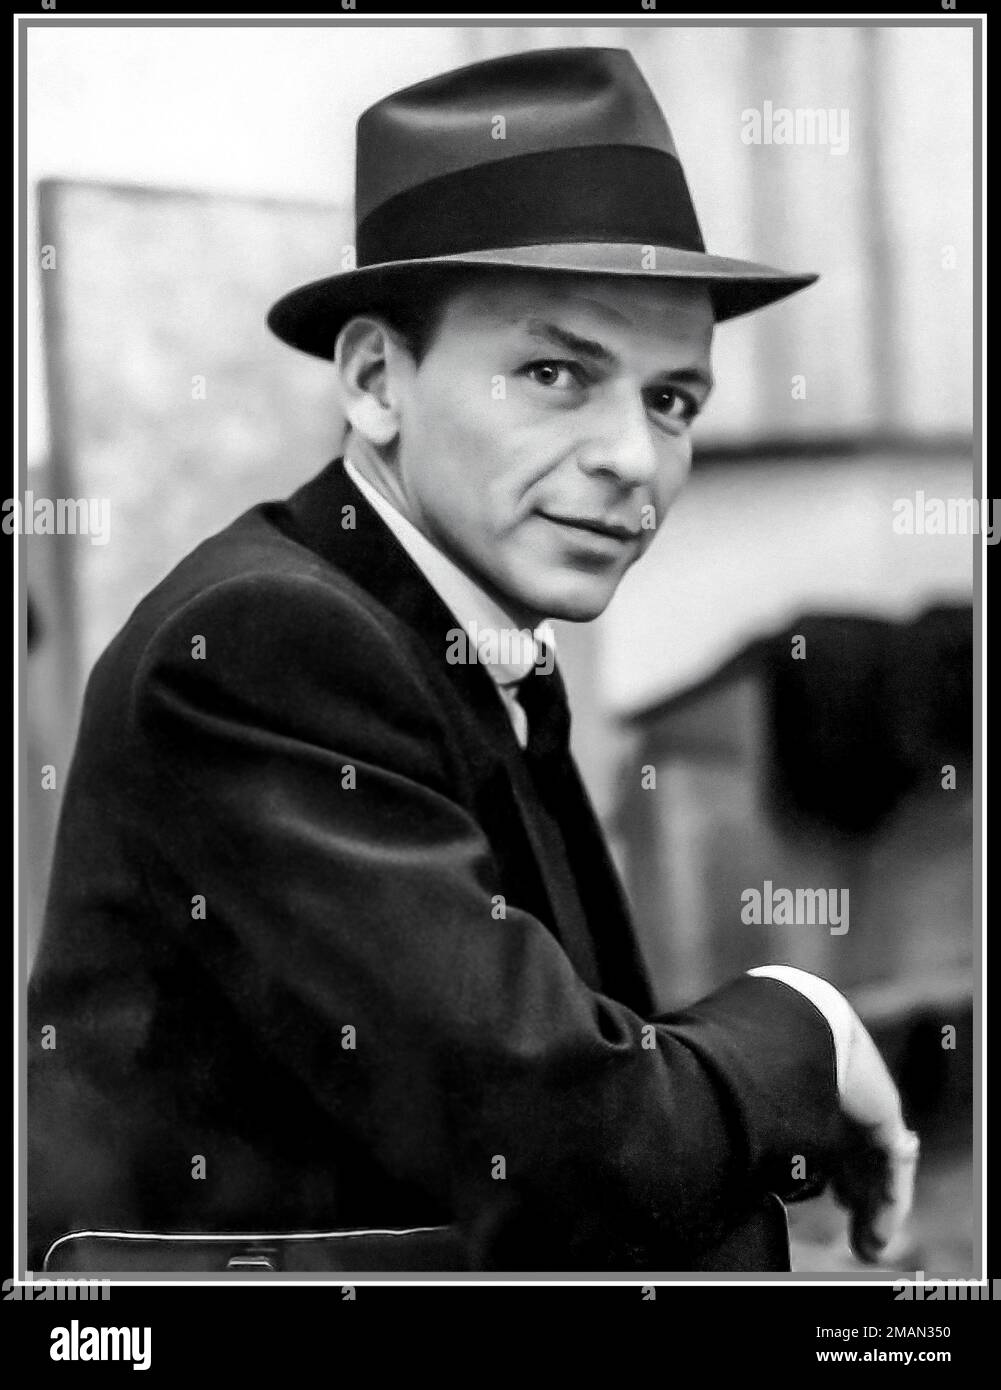 Frank Sinatra ritratto informale indossando il suo cappello di marchio, a Capitol Studios Hollywood, c ottobre 1957, durante la registrazione di 'come Fly With Me'. California Stati Uniti Foto Stock